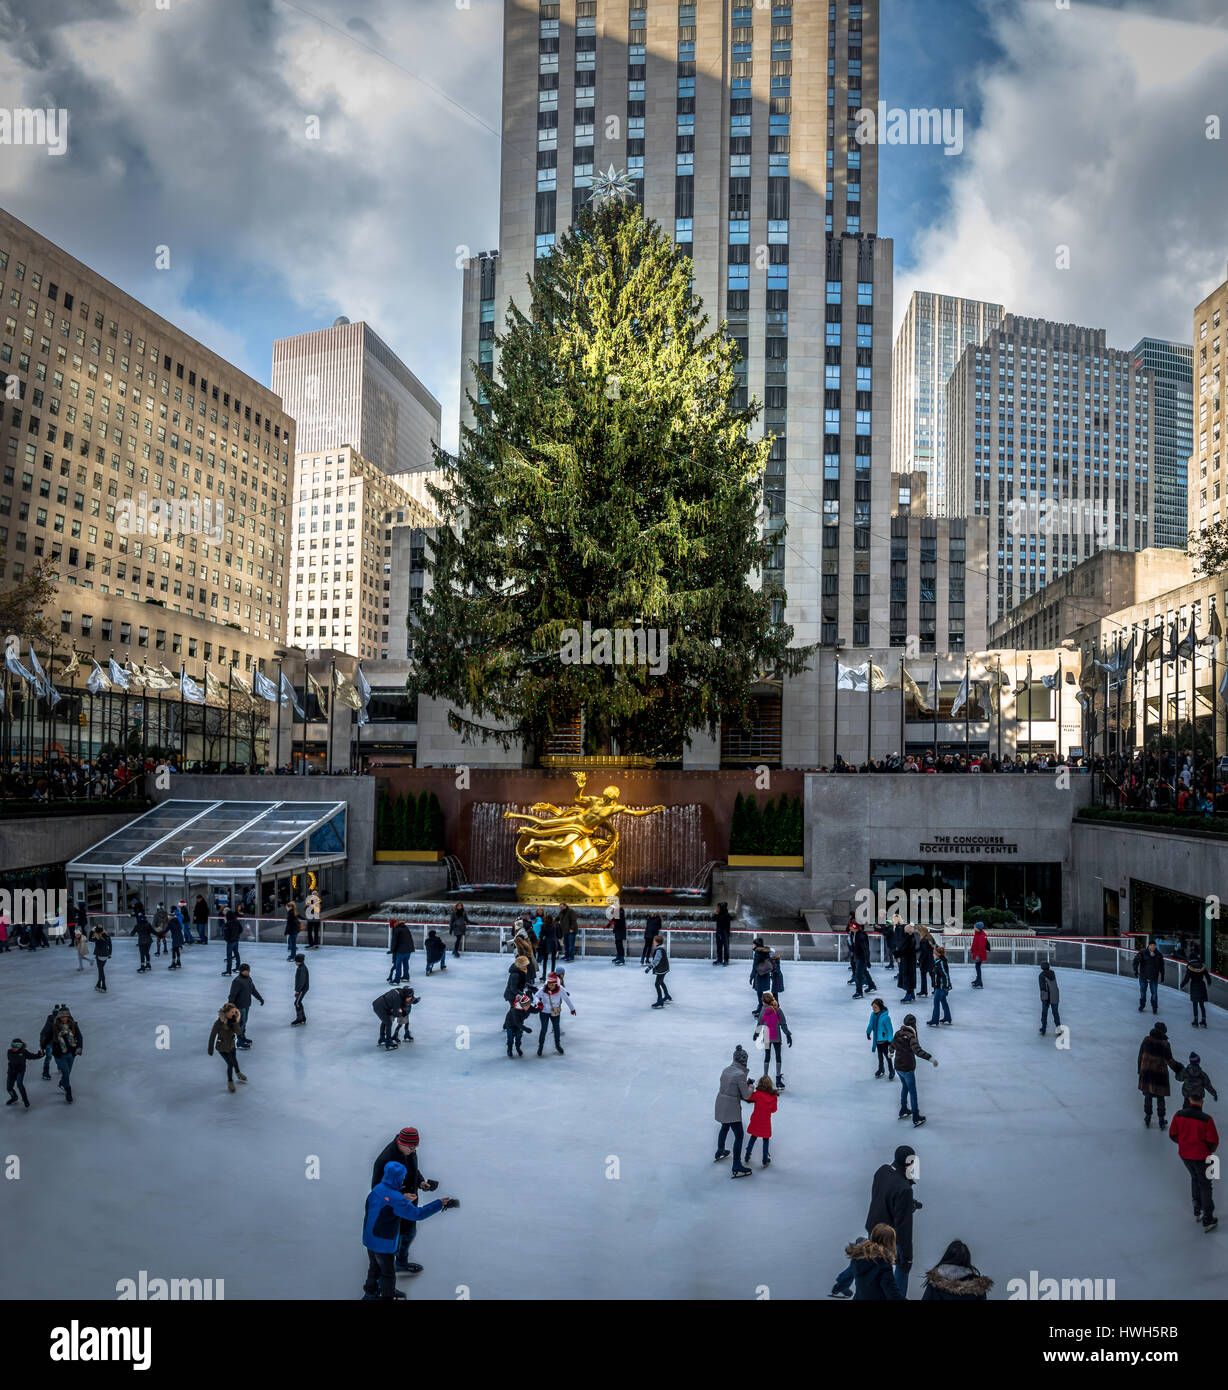 Les gens le patinage sur glace en face de l'arbre de Noël du Rockefeller Center - New York, USA Banque D'Images